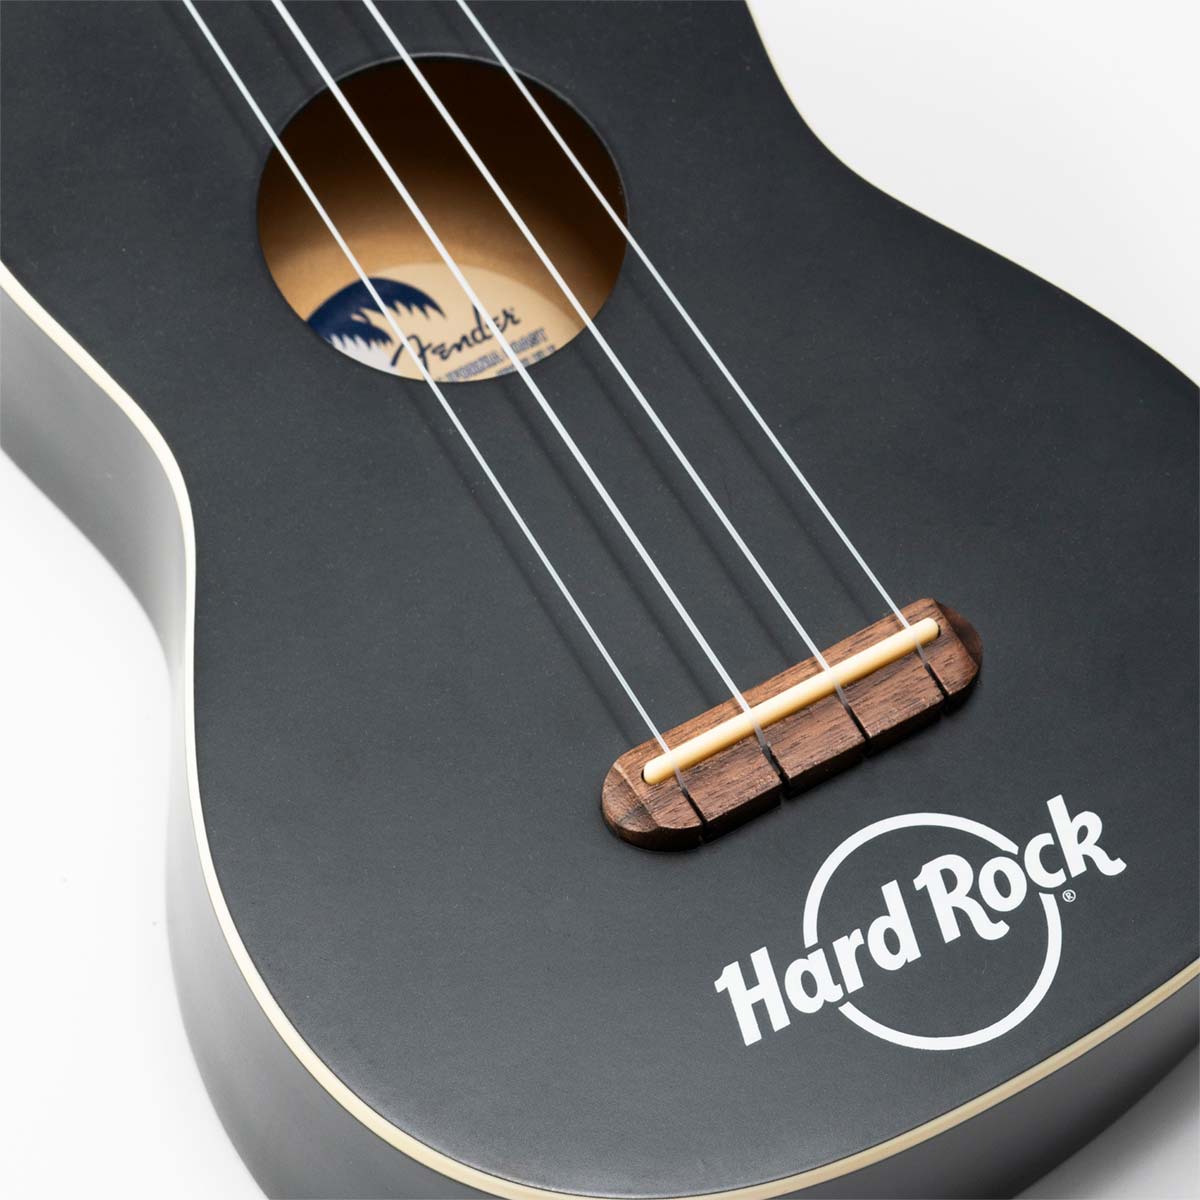 Fender x Hard Rock Venice Ukelee in Satin Black with Bag image number 2